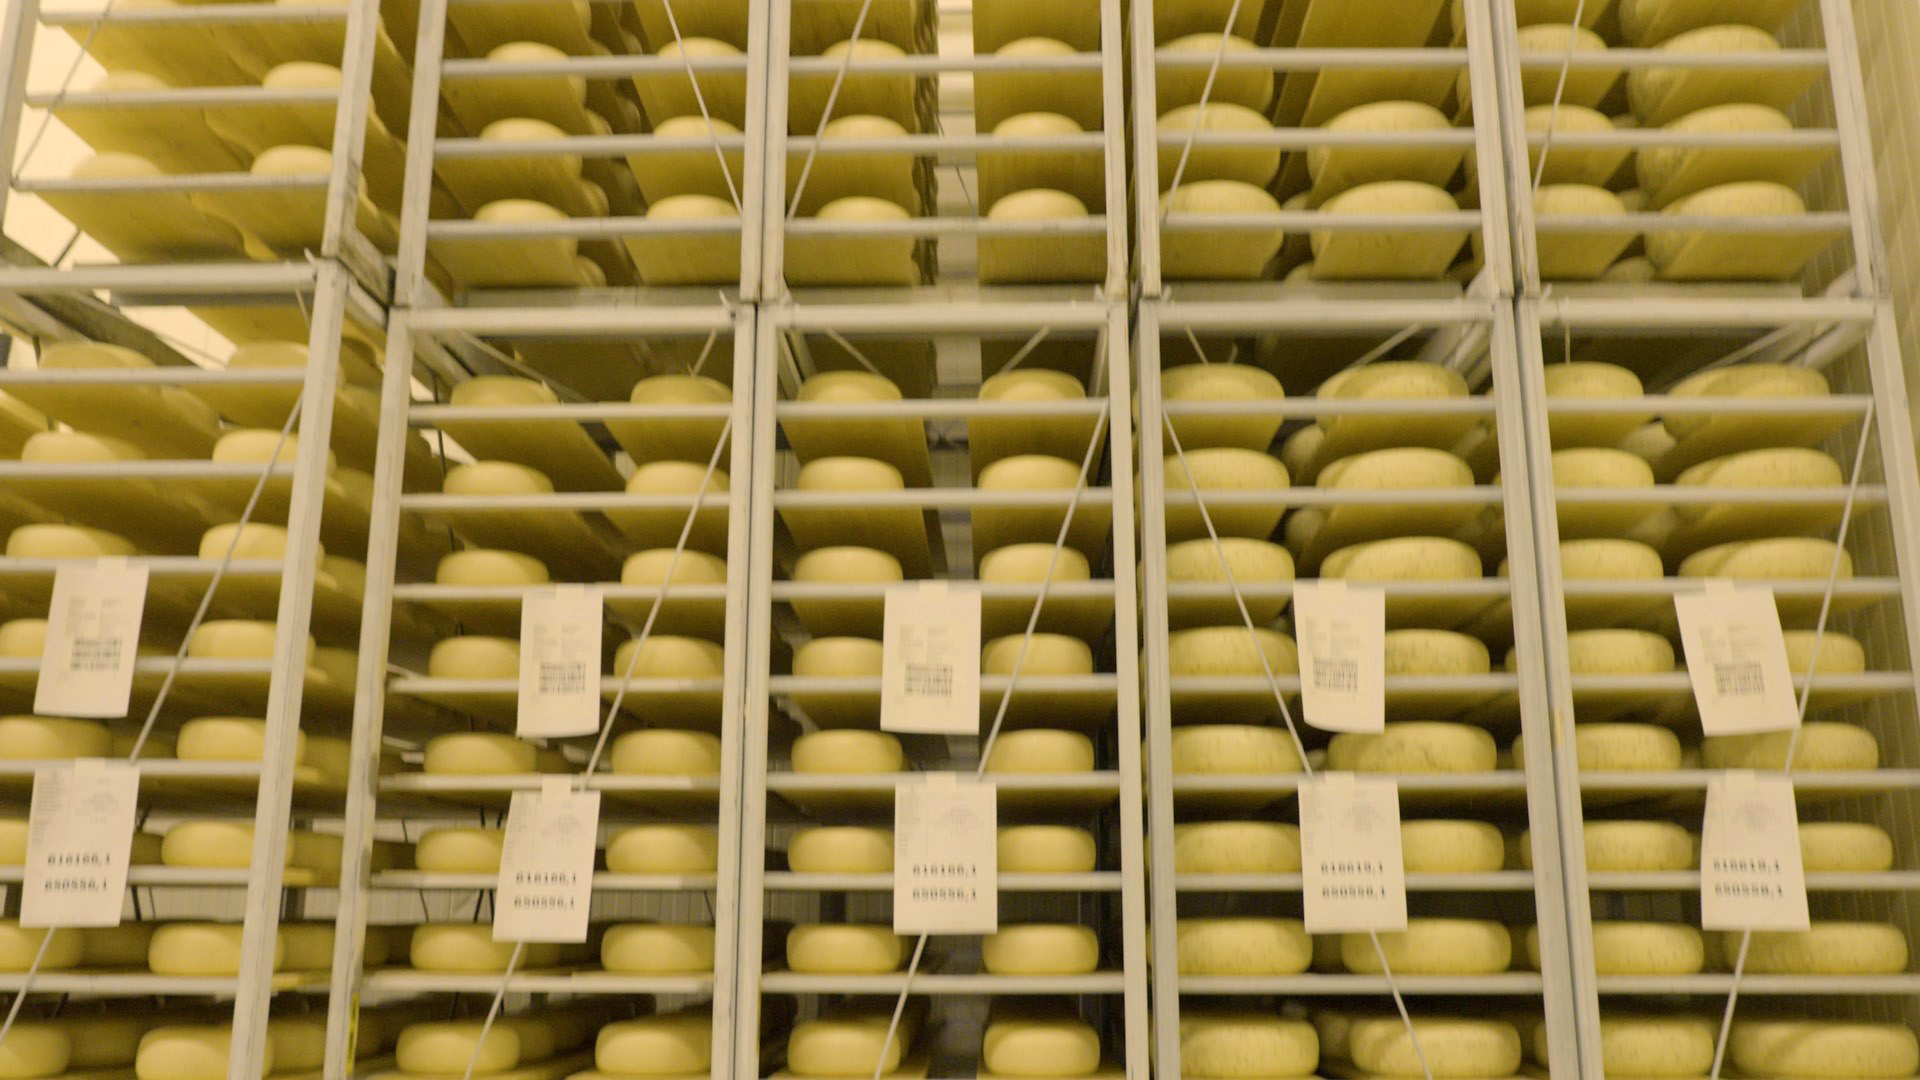 amalthea cheese aging racks.